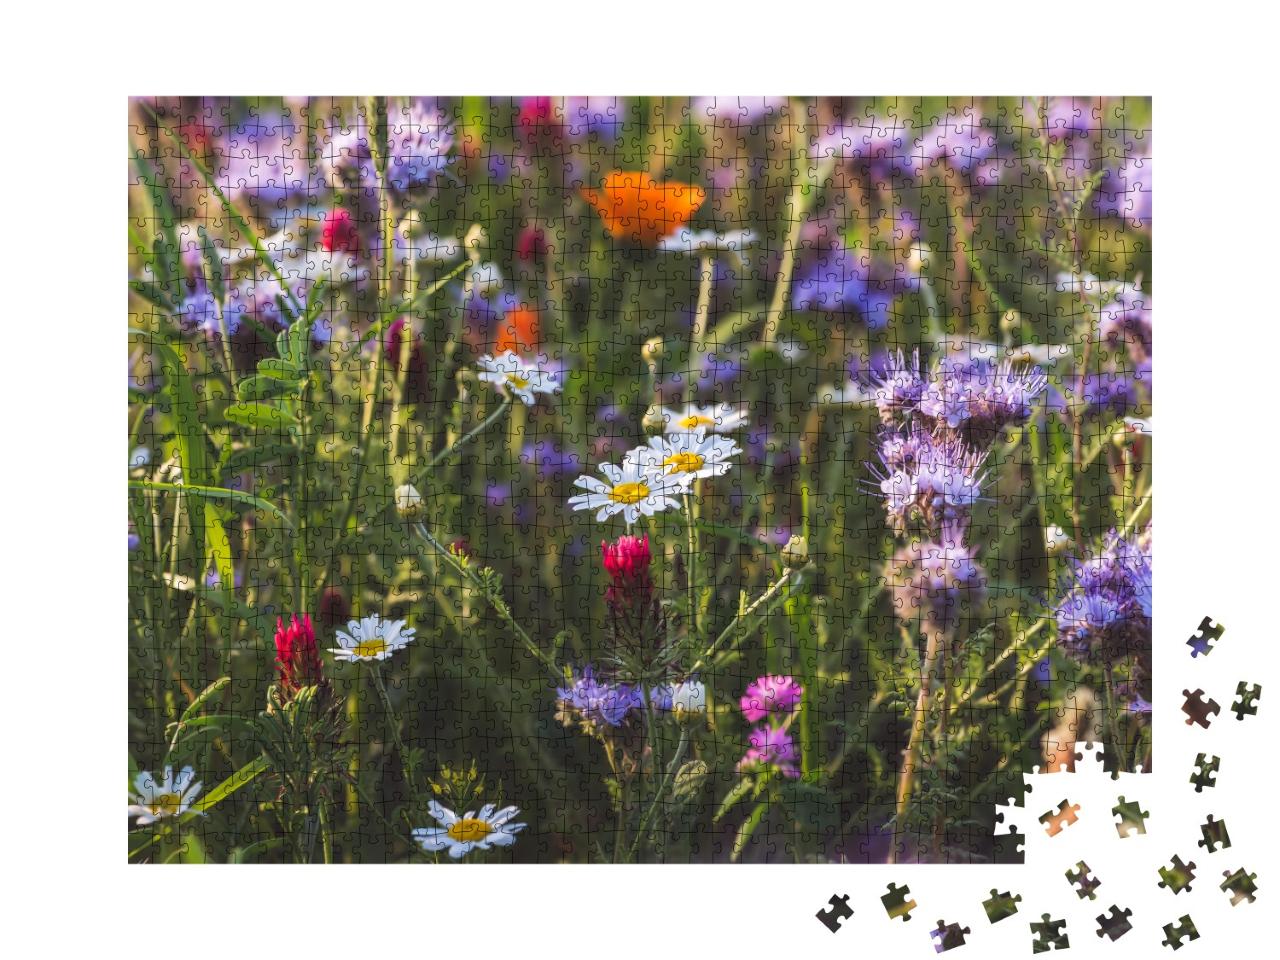 Puzzle de 1000 pièces « Prairie d'herbes aromatiques à floraison multicolore avec phacélie et soucis à fleurs violettes »